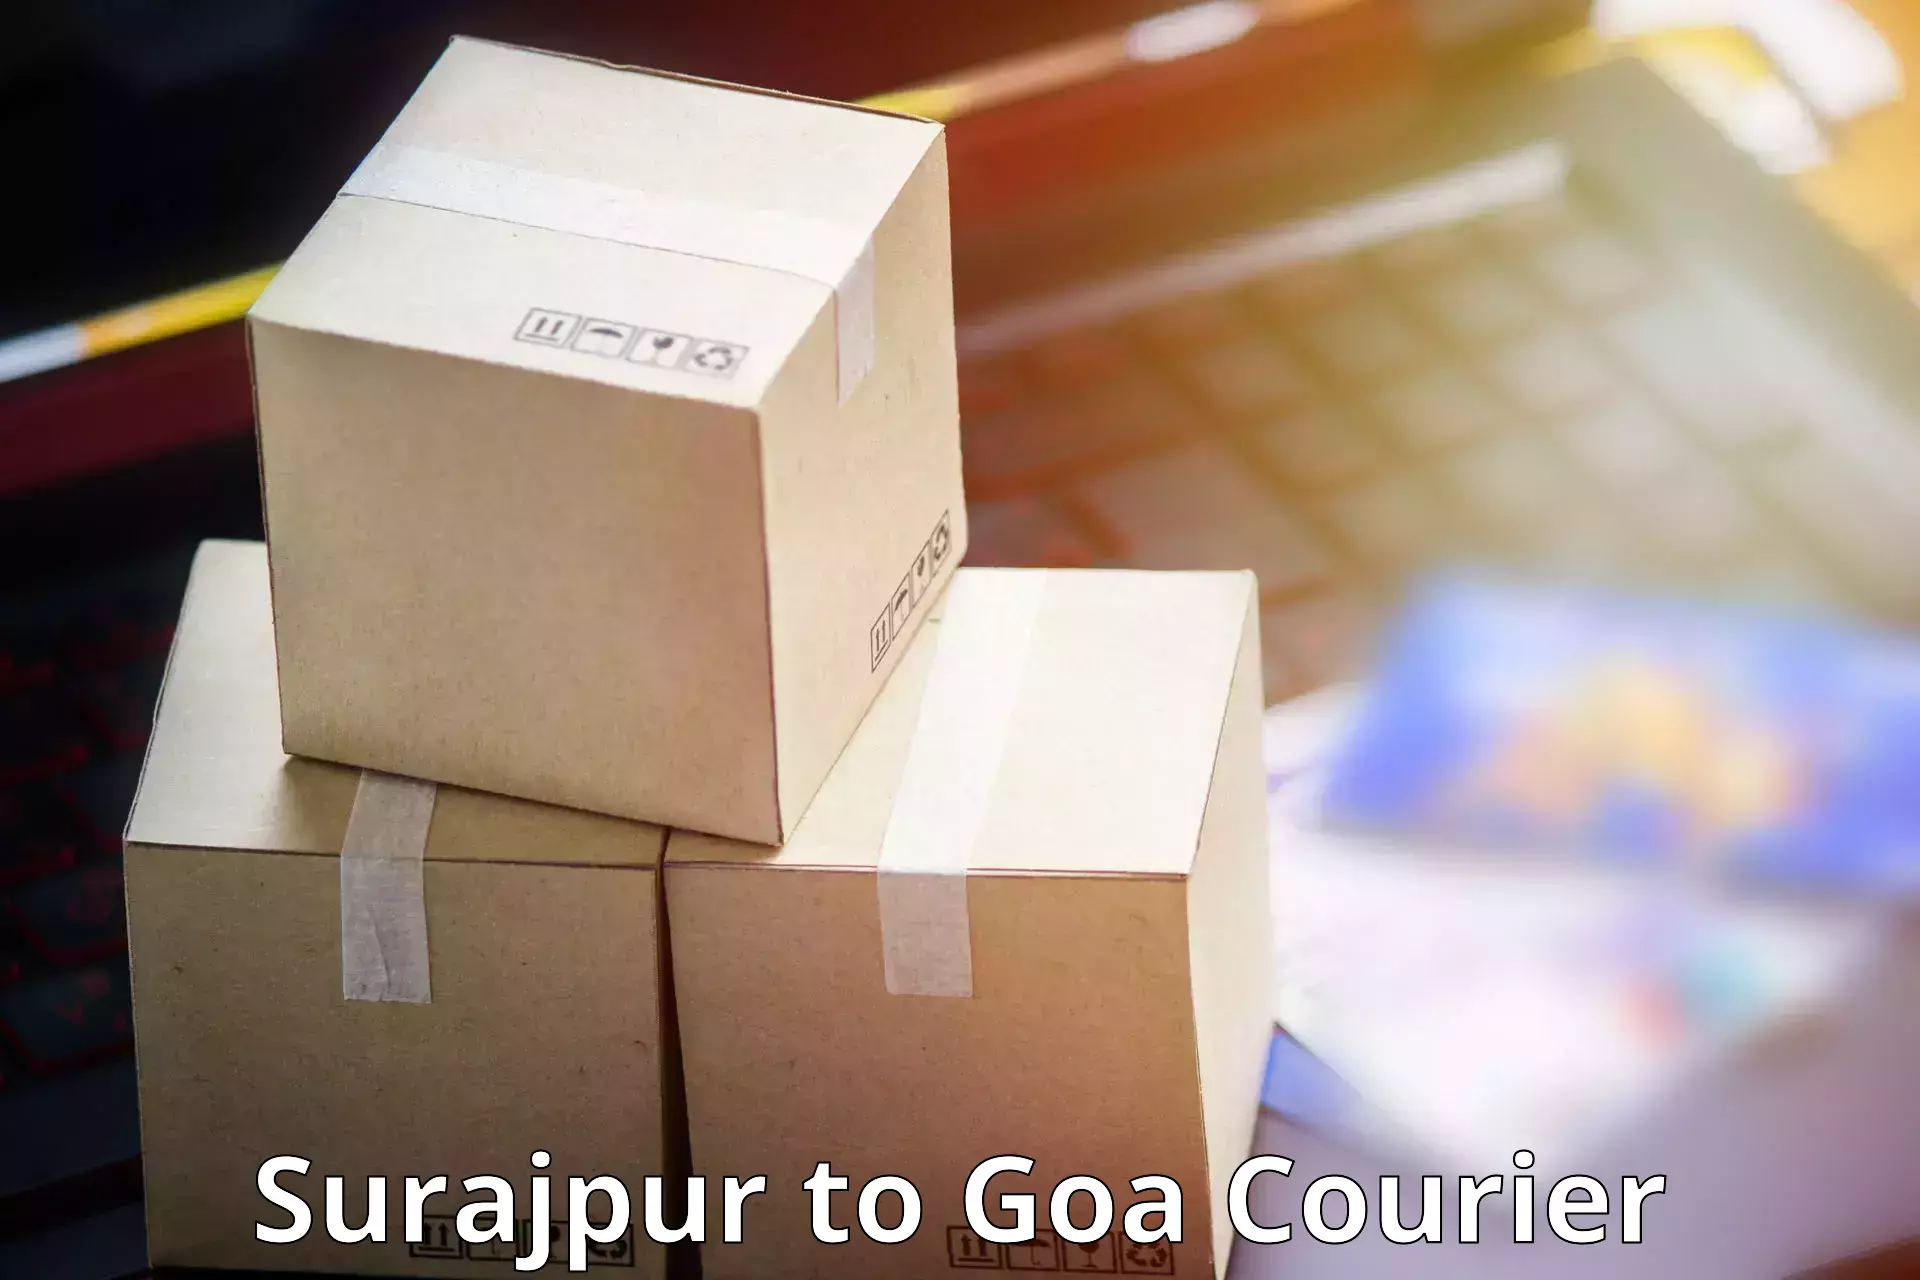 Professional parcel services Surajpur to NIT Goa